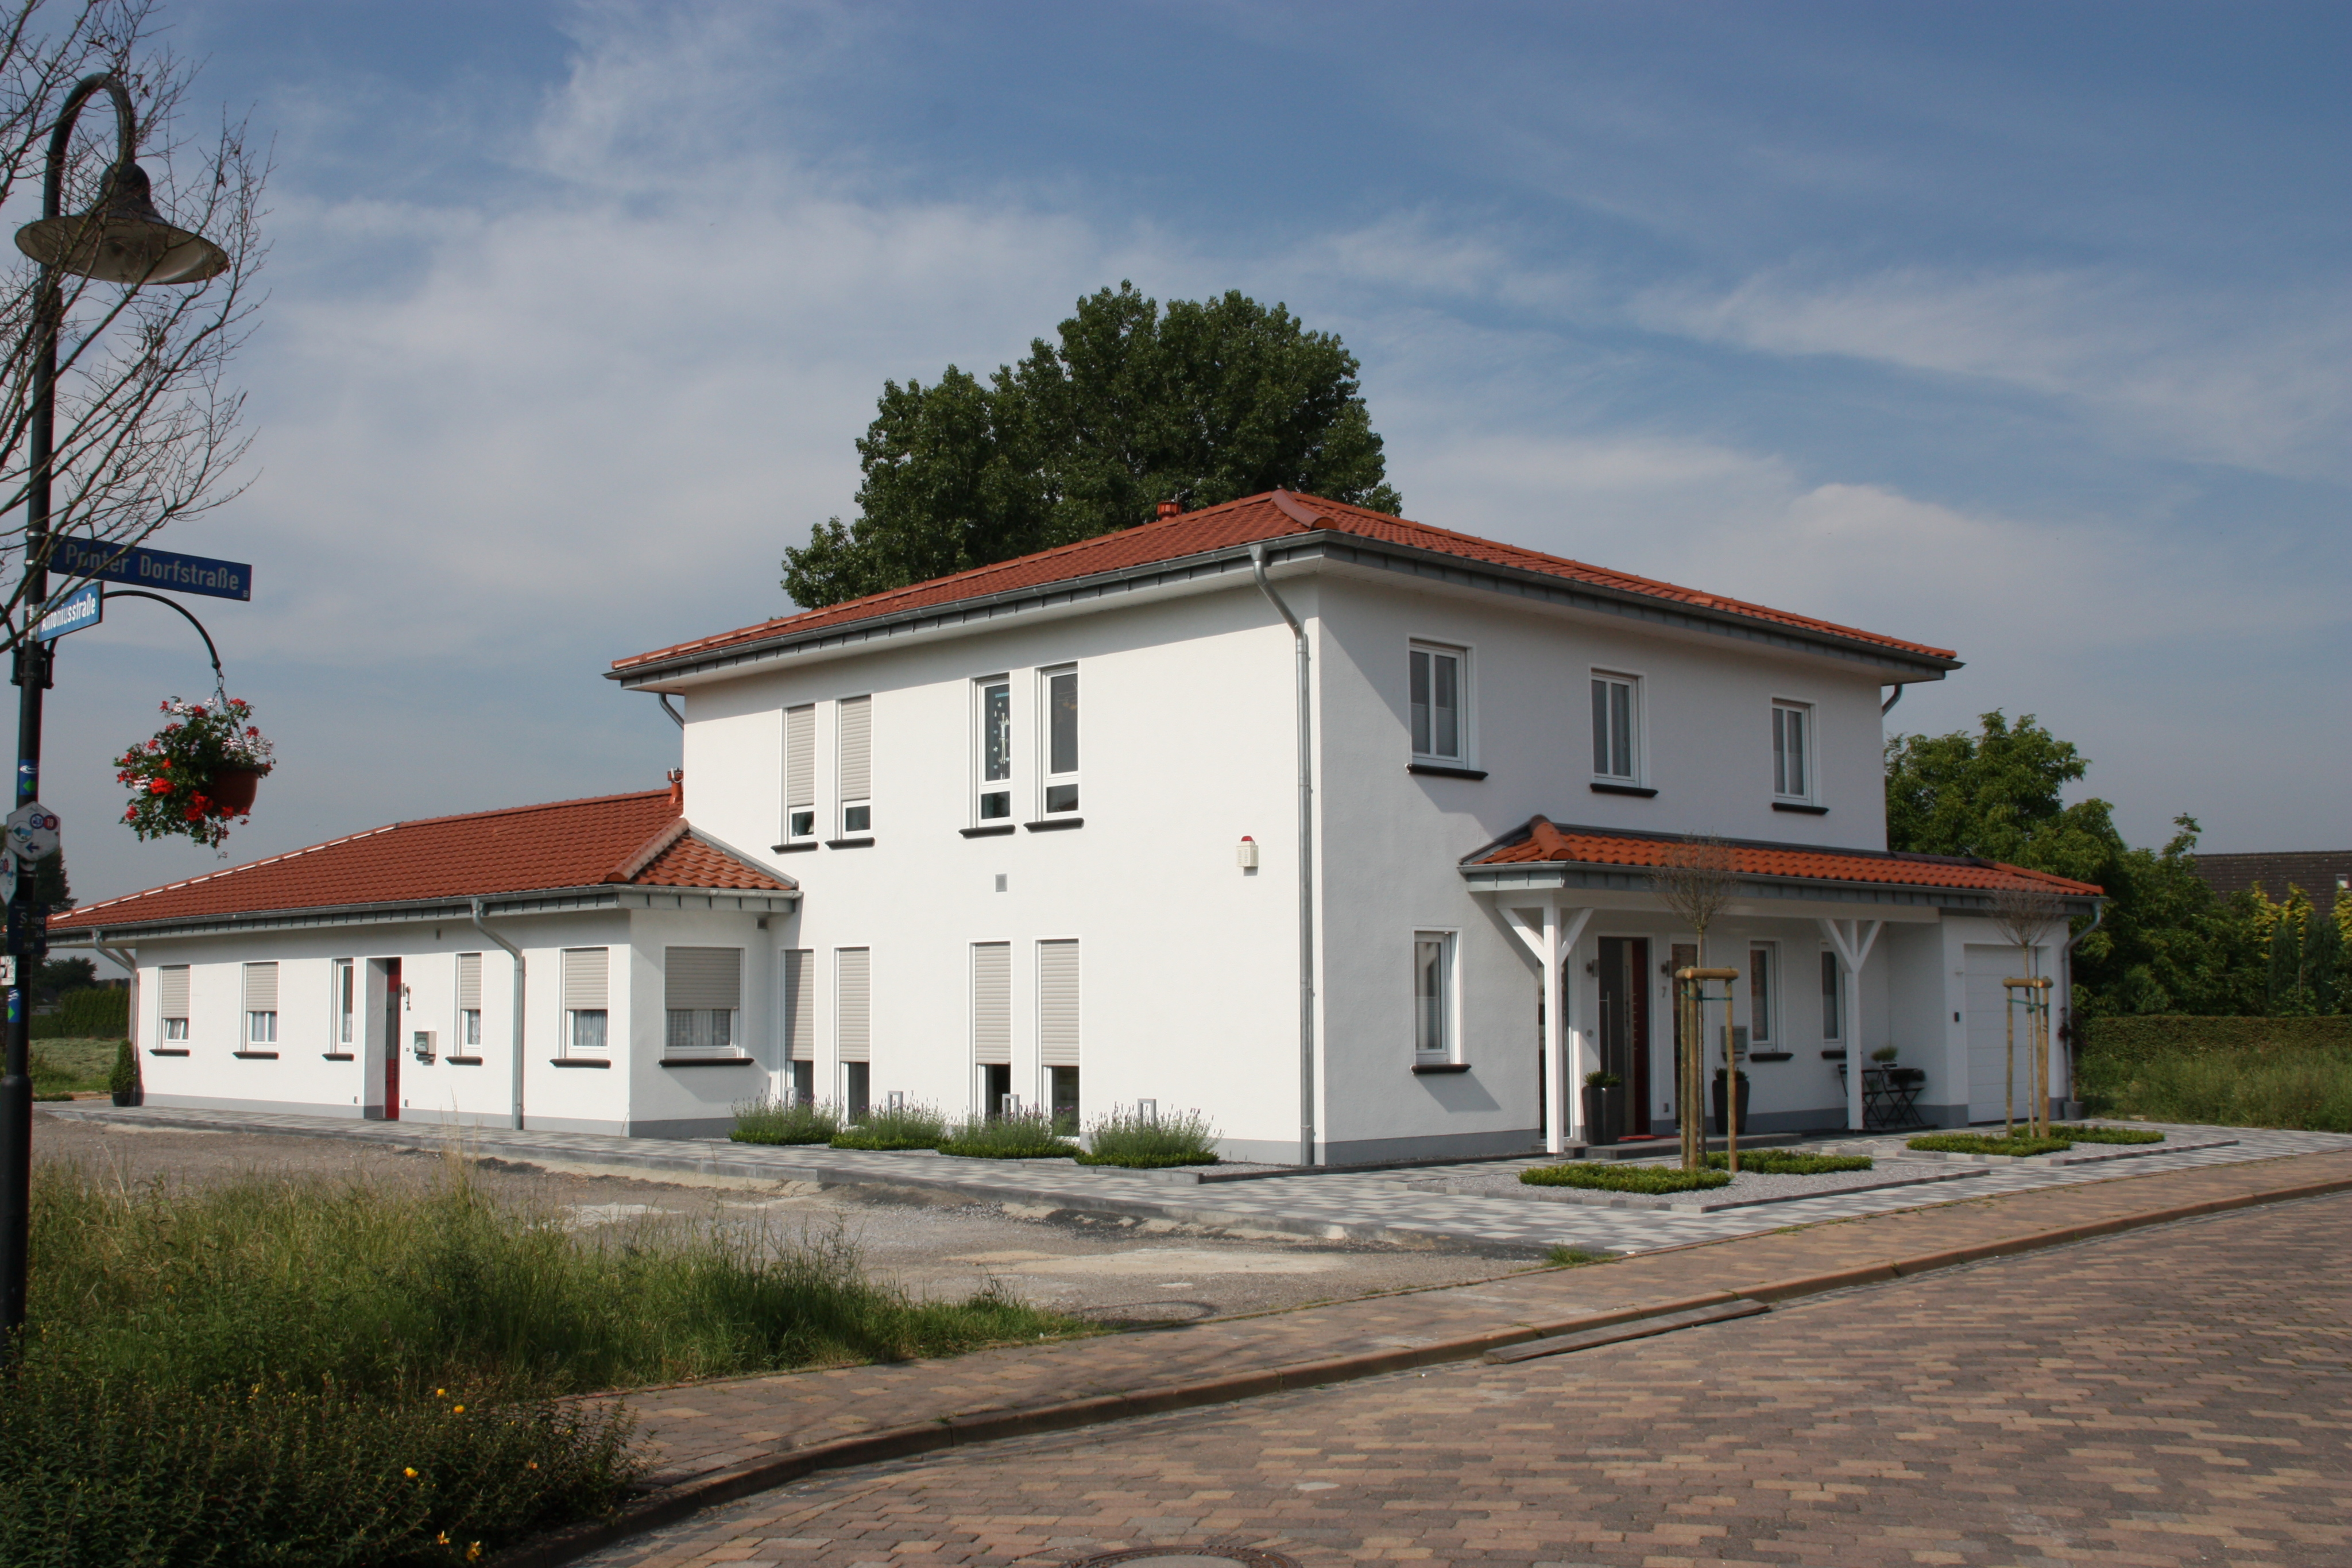 Ländliches Wohnhaus mit neuen Fenstern in weiß. Das Haus ist im Panorama zu sehen und hat weiße Wände sowie ein Dach mit roten Dachpfannen